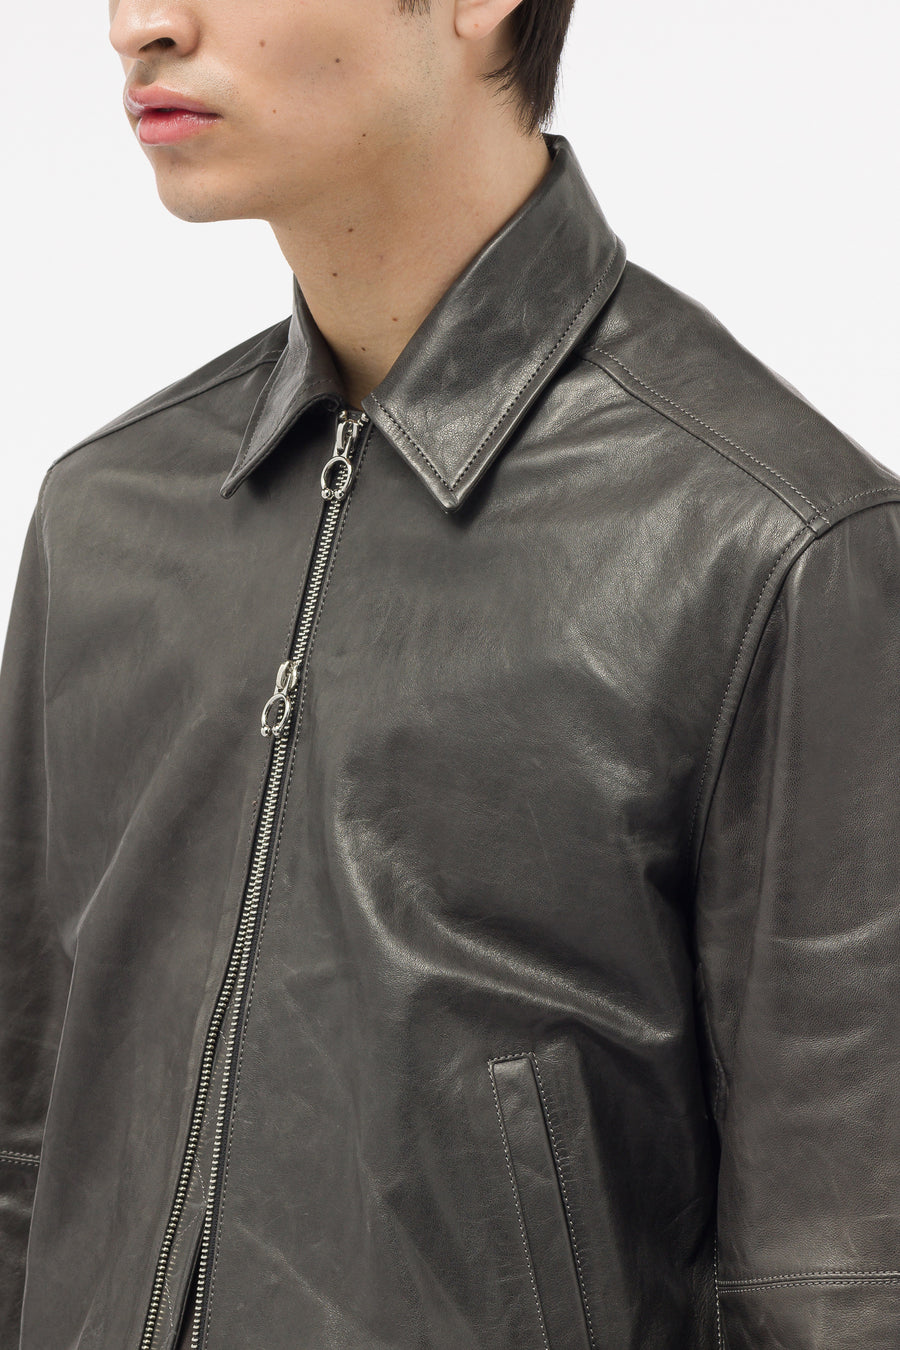 XIMONLEE - Men's Chain Cuff Jacket in Grey - Notre